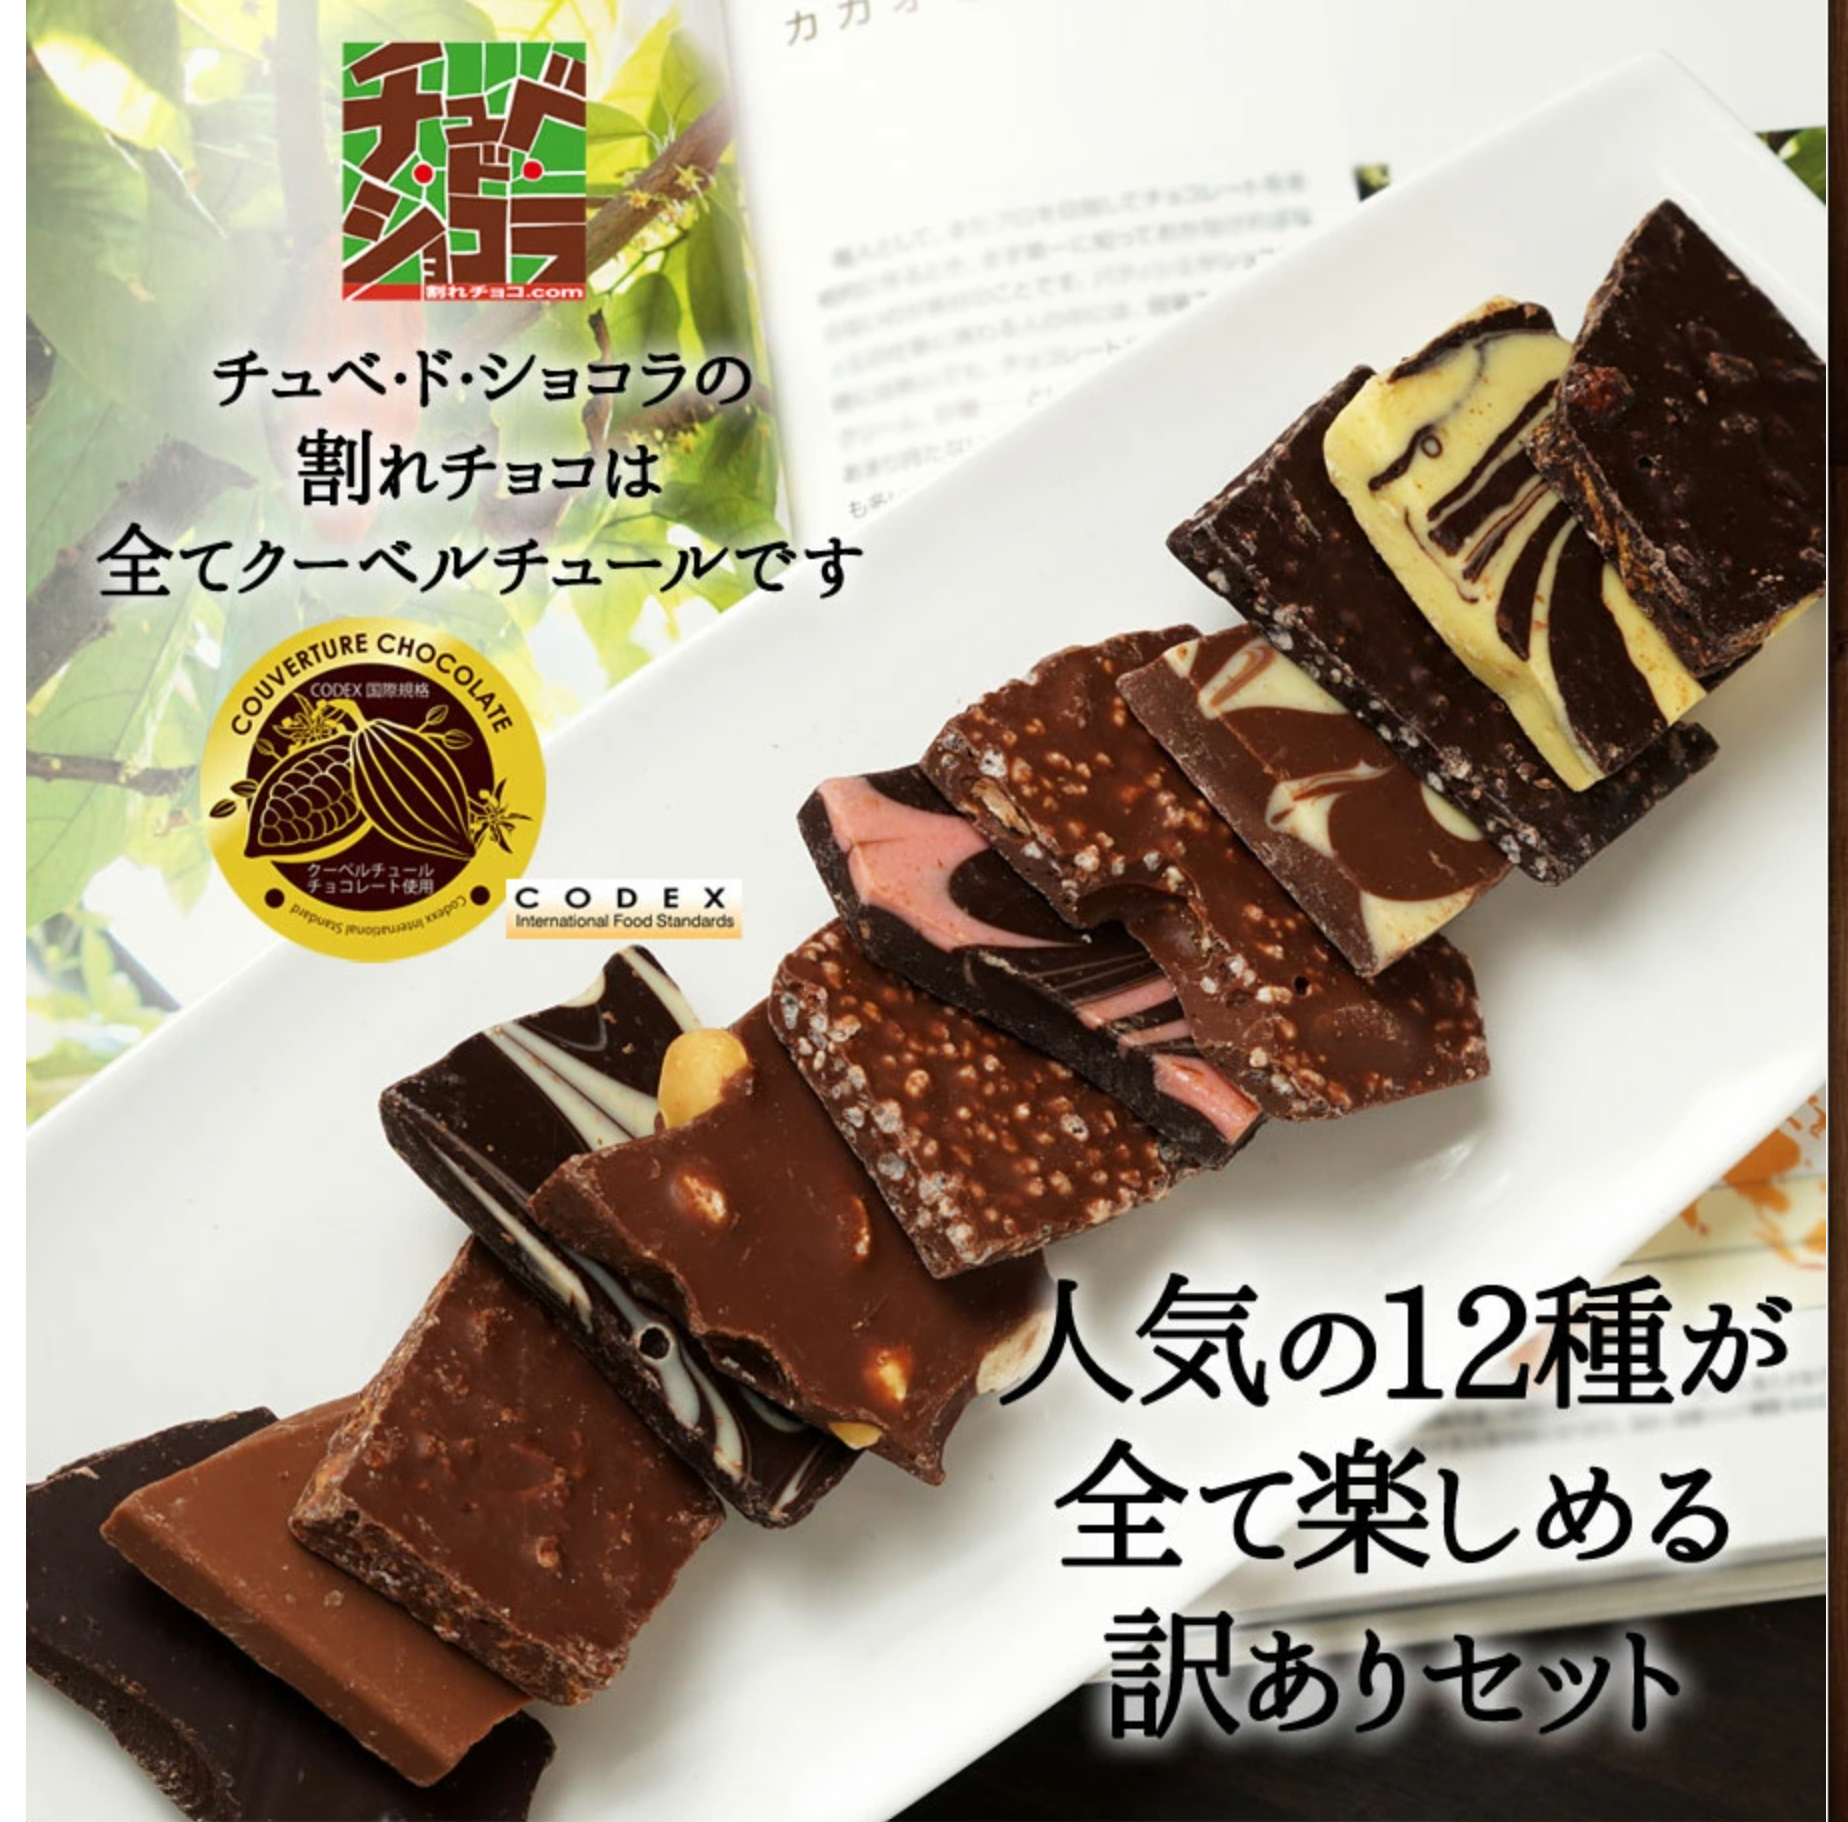 送料無料【割れチョコミックス12種】-1kg-チュベ・ド・ショコラ-割れチョコ一覧-チュベ・ド・ショコラ